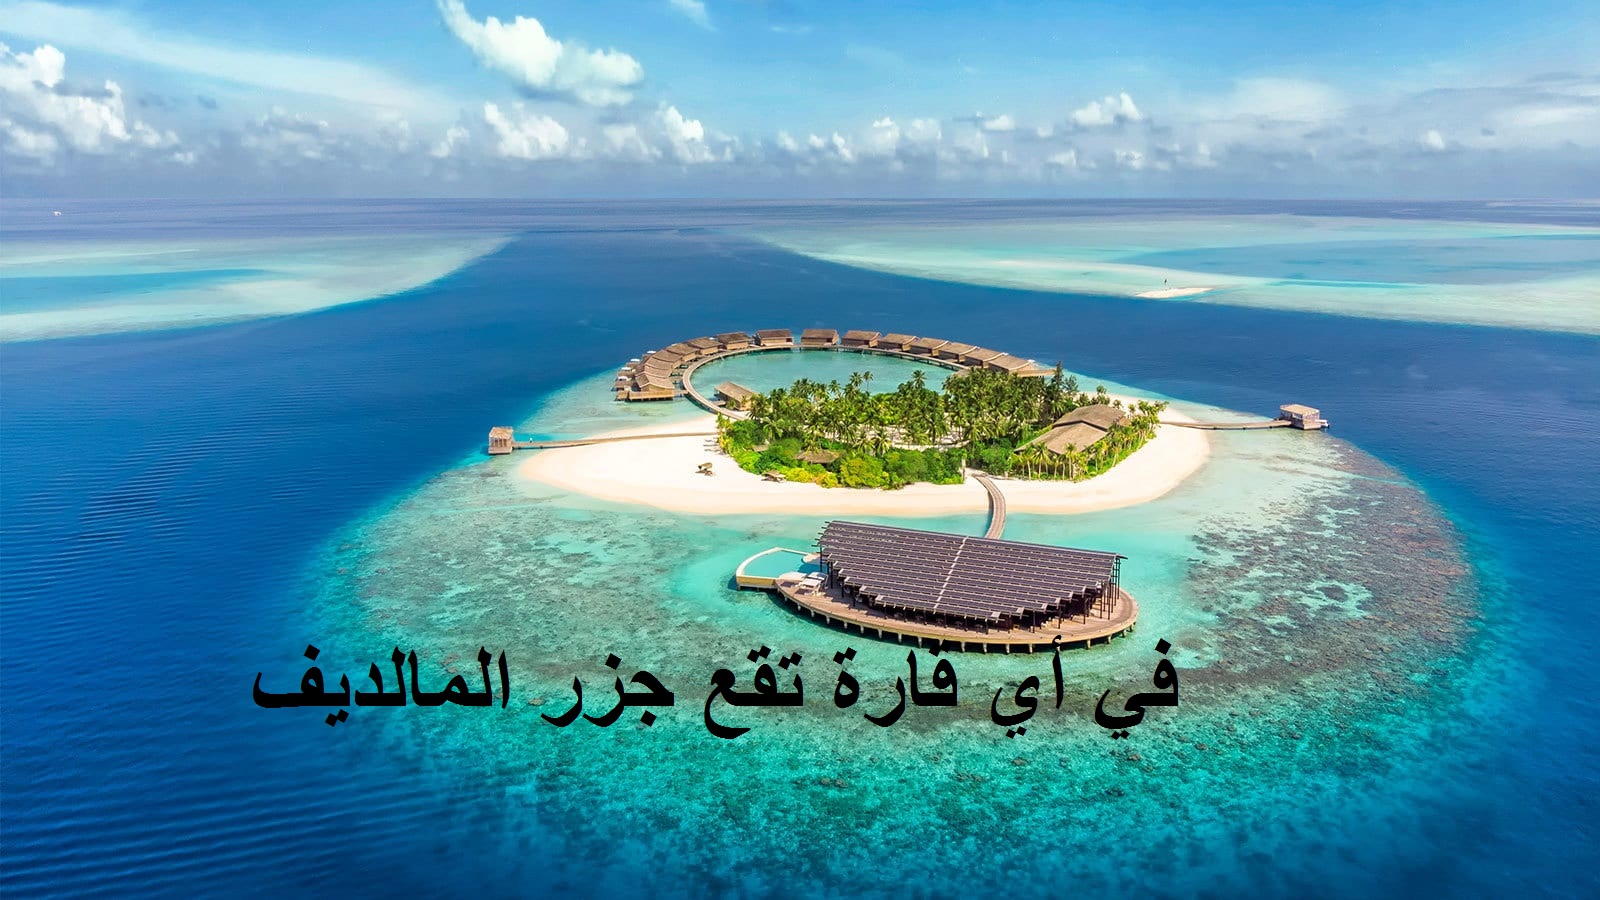 في أي قارة تقع جزر المالديف.. إجابة سؤال الحلقة 16 في مسابقة مهيب ورزان رمضان 2021 لربح 100 ألف جنيه